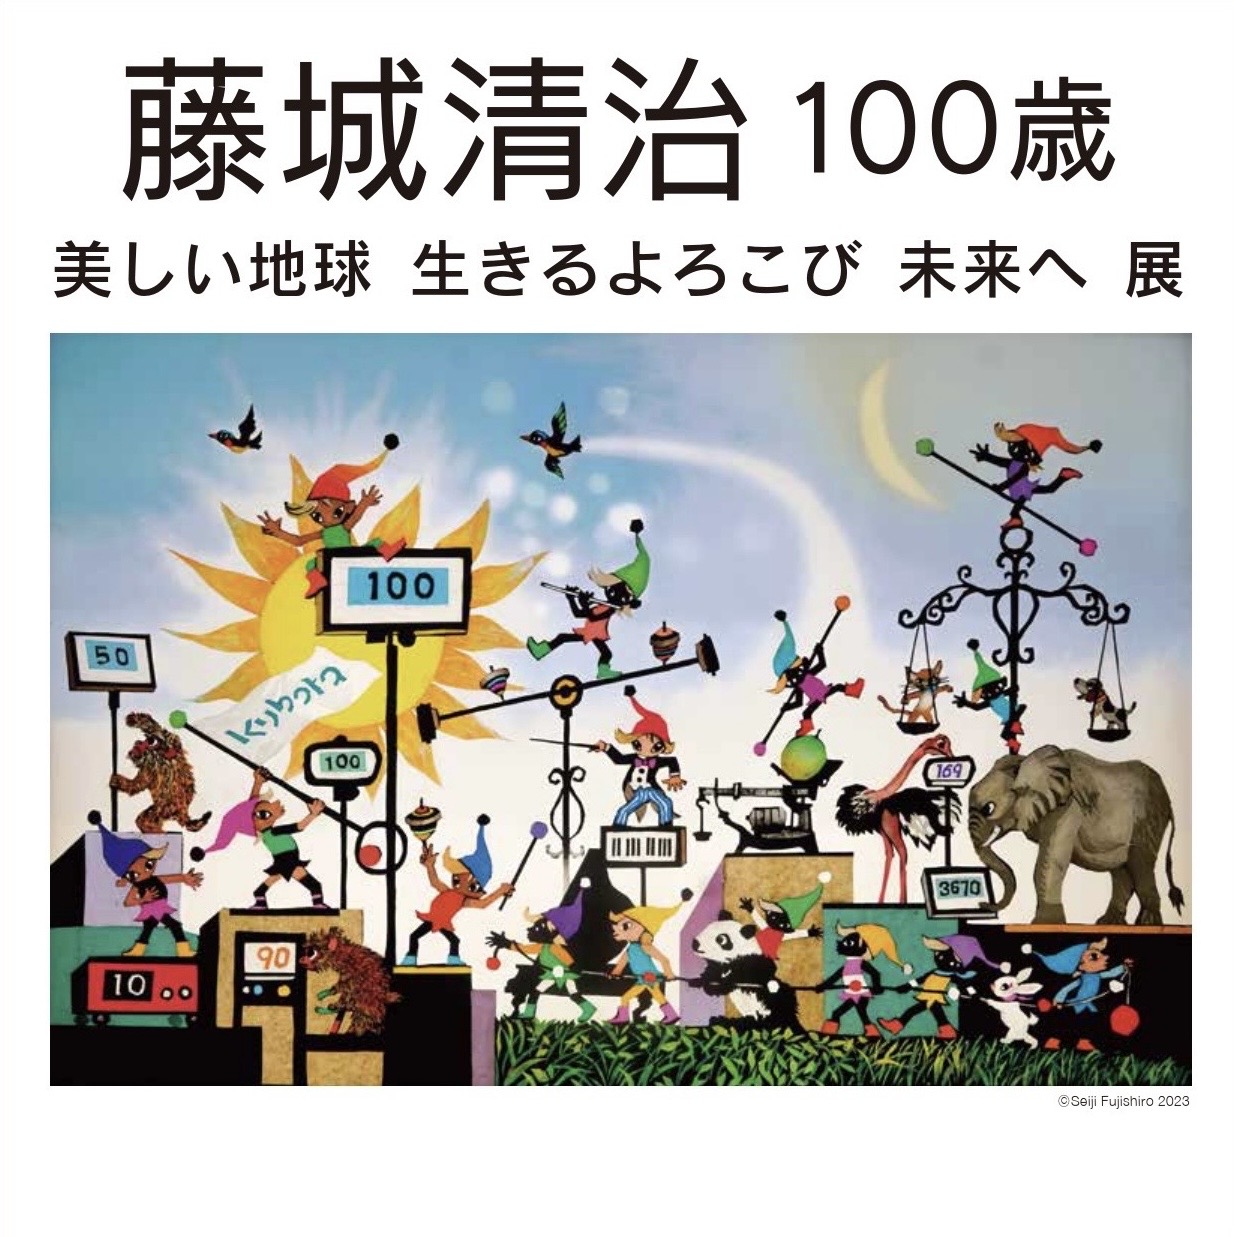 福岡市博物館 特別展「藤城清治 100歳 美しい地球 生きるよろこび 未来へ」との相互割引企画